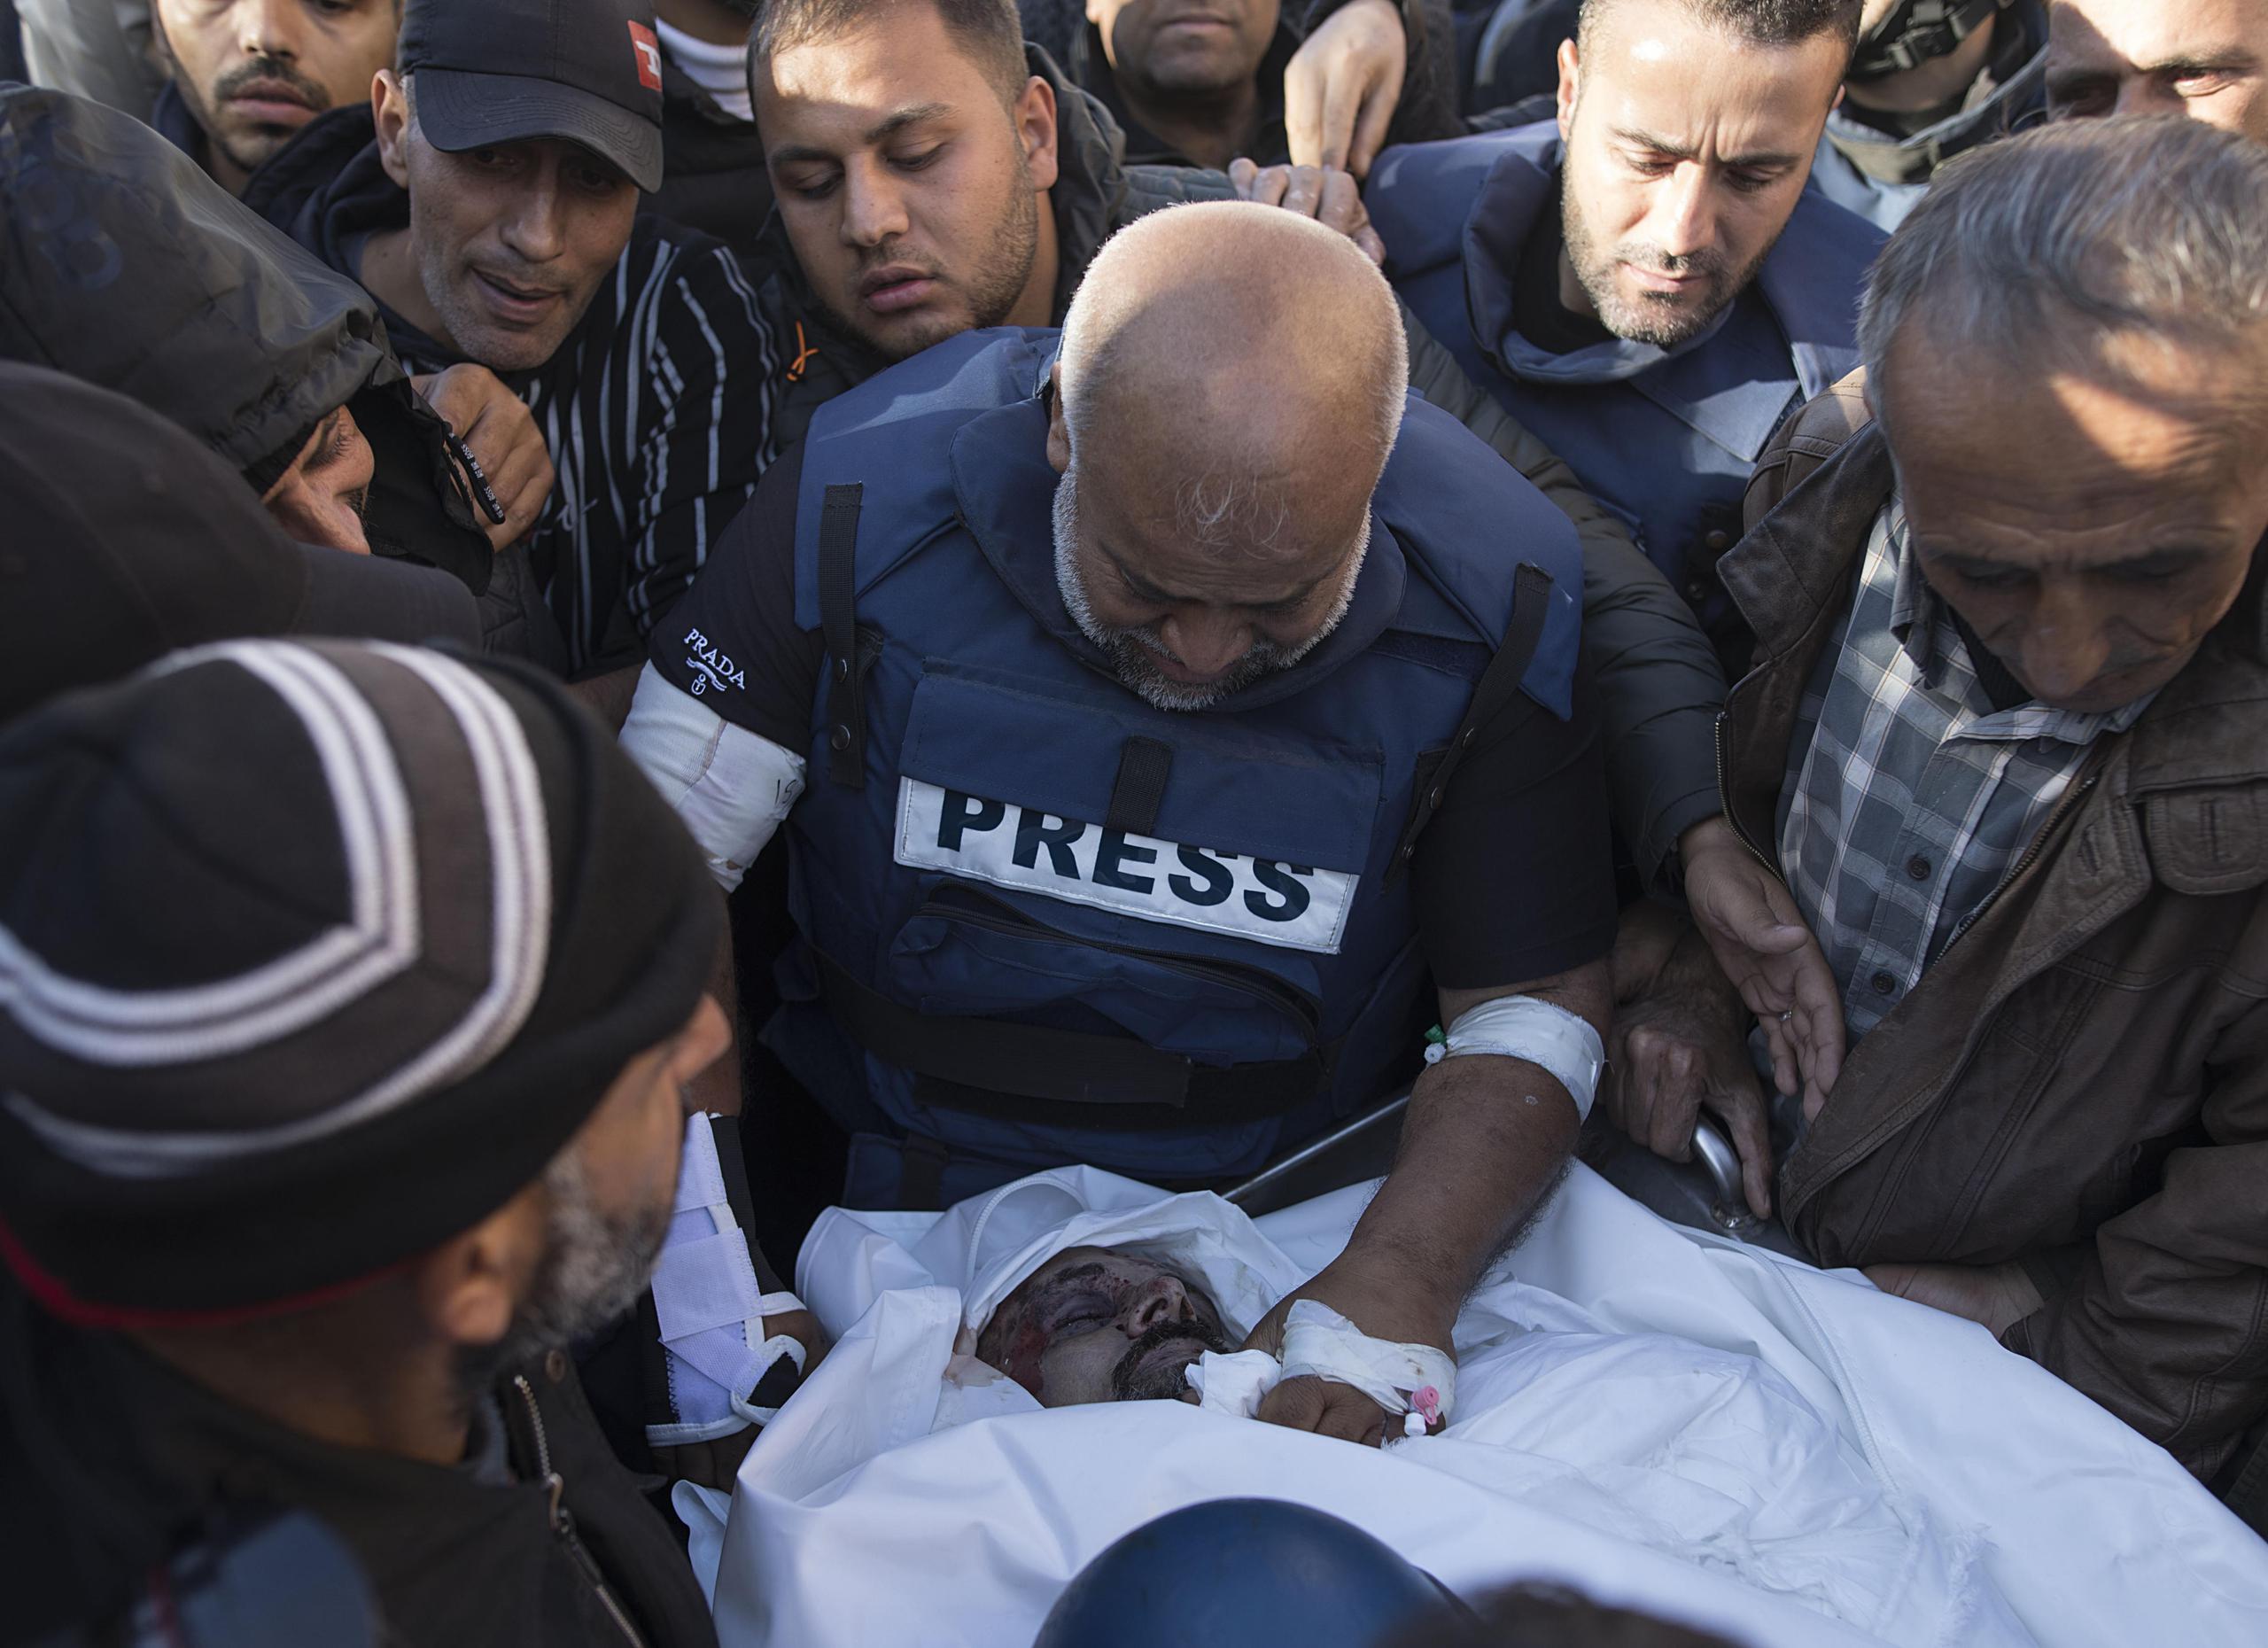 Imagen de Archivo del jefe de la corresponsalía de la televisión catarí Al Jazeera en el enclave palestino, Wael al Dahdouh en el funeral de su compañero asesinado, el cámarógrafo Samer Abu Daqqa.
EFE/EPA/HAITHAM IMAD
